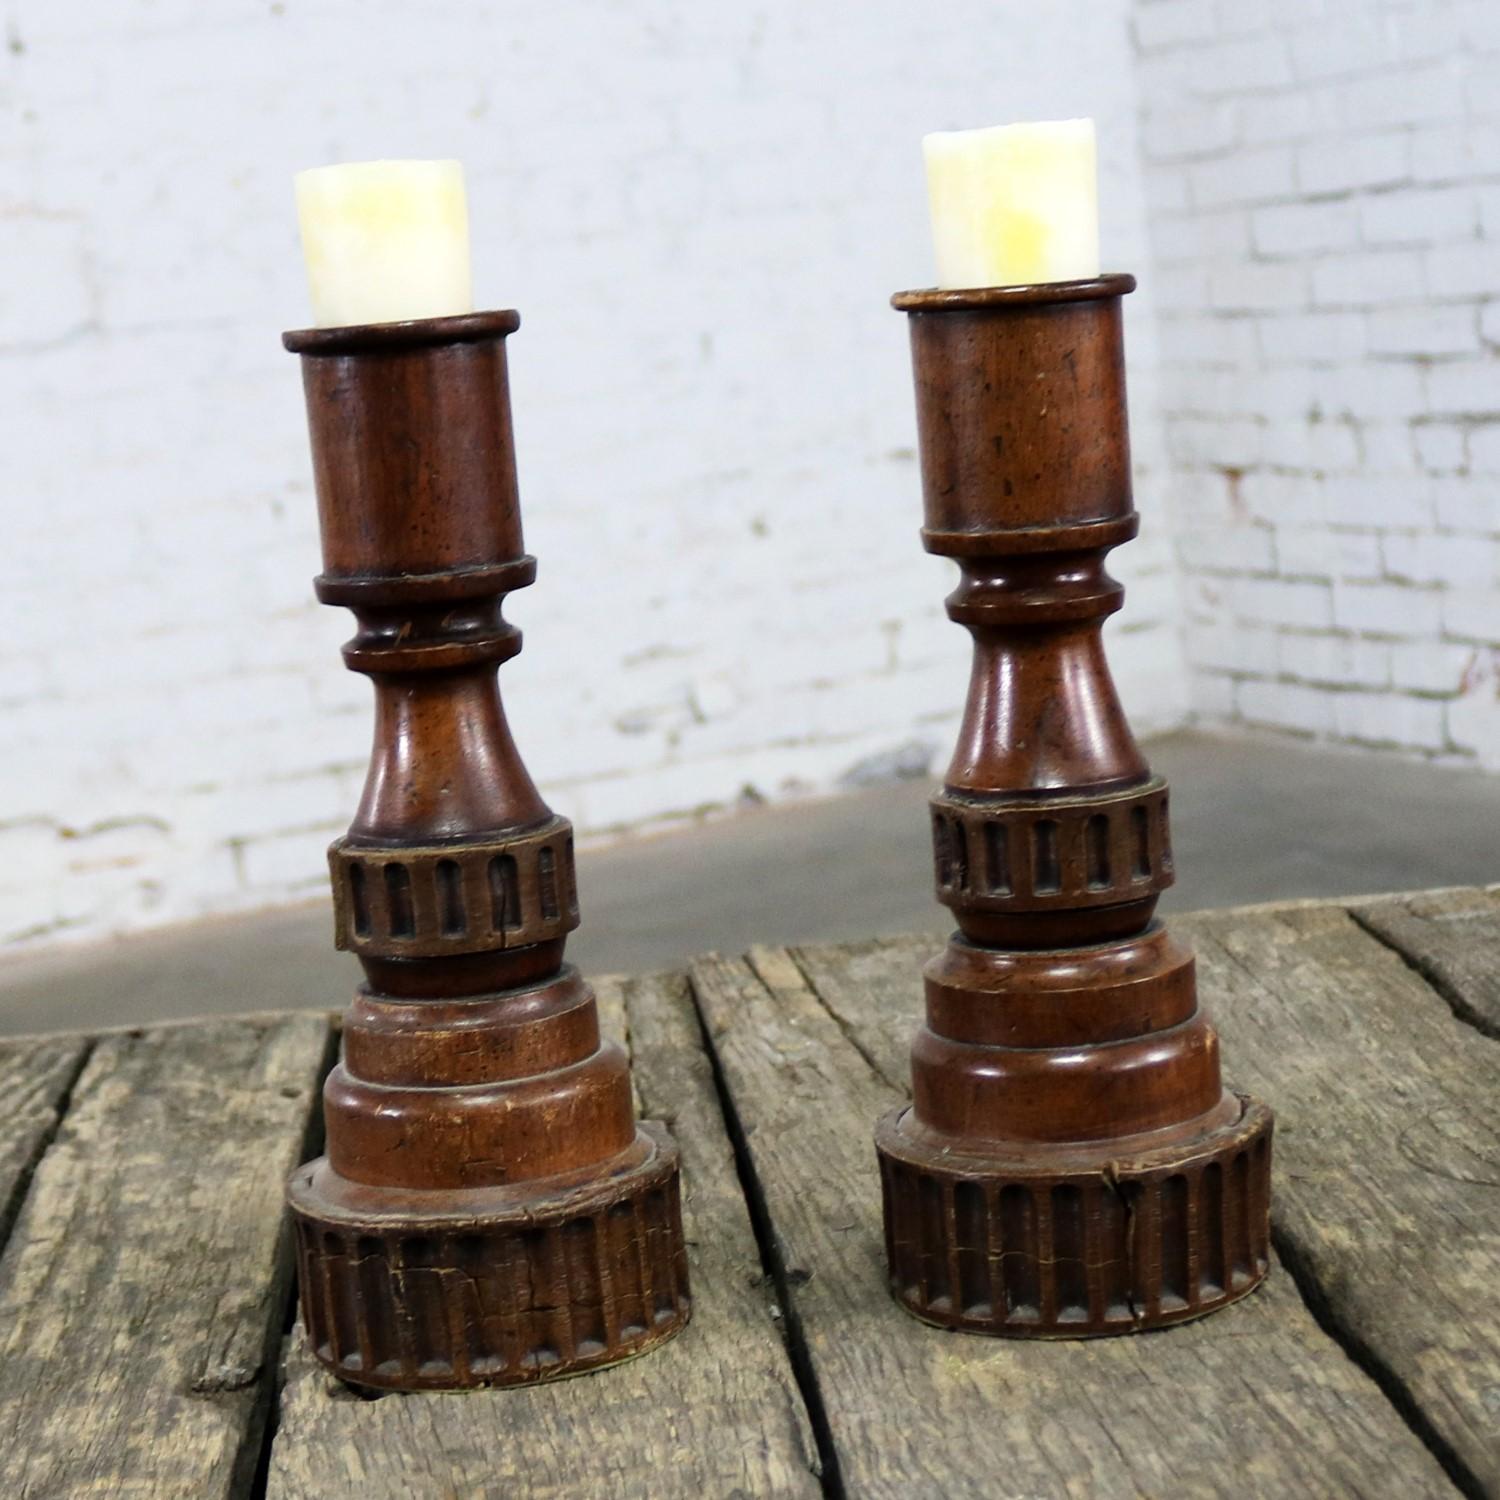 Hübsches Paar Kerzenhalter aus gedrechseltem Holz und Komposit. Diese sind in gutem Vintage-Zustand mit viel schöner Patina, circa 20. Jahrhundert.

Manchmal braucht man nur ein einfaches Paar Kerzenständer, egal ob man sie allein verwendet oder